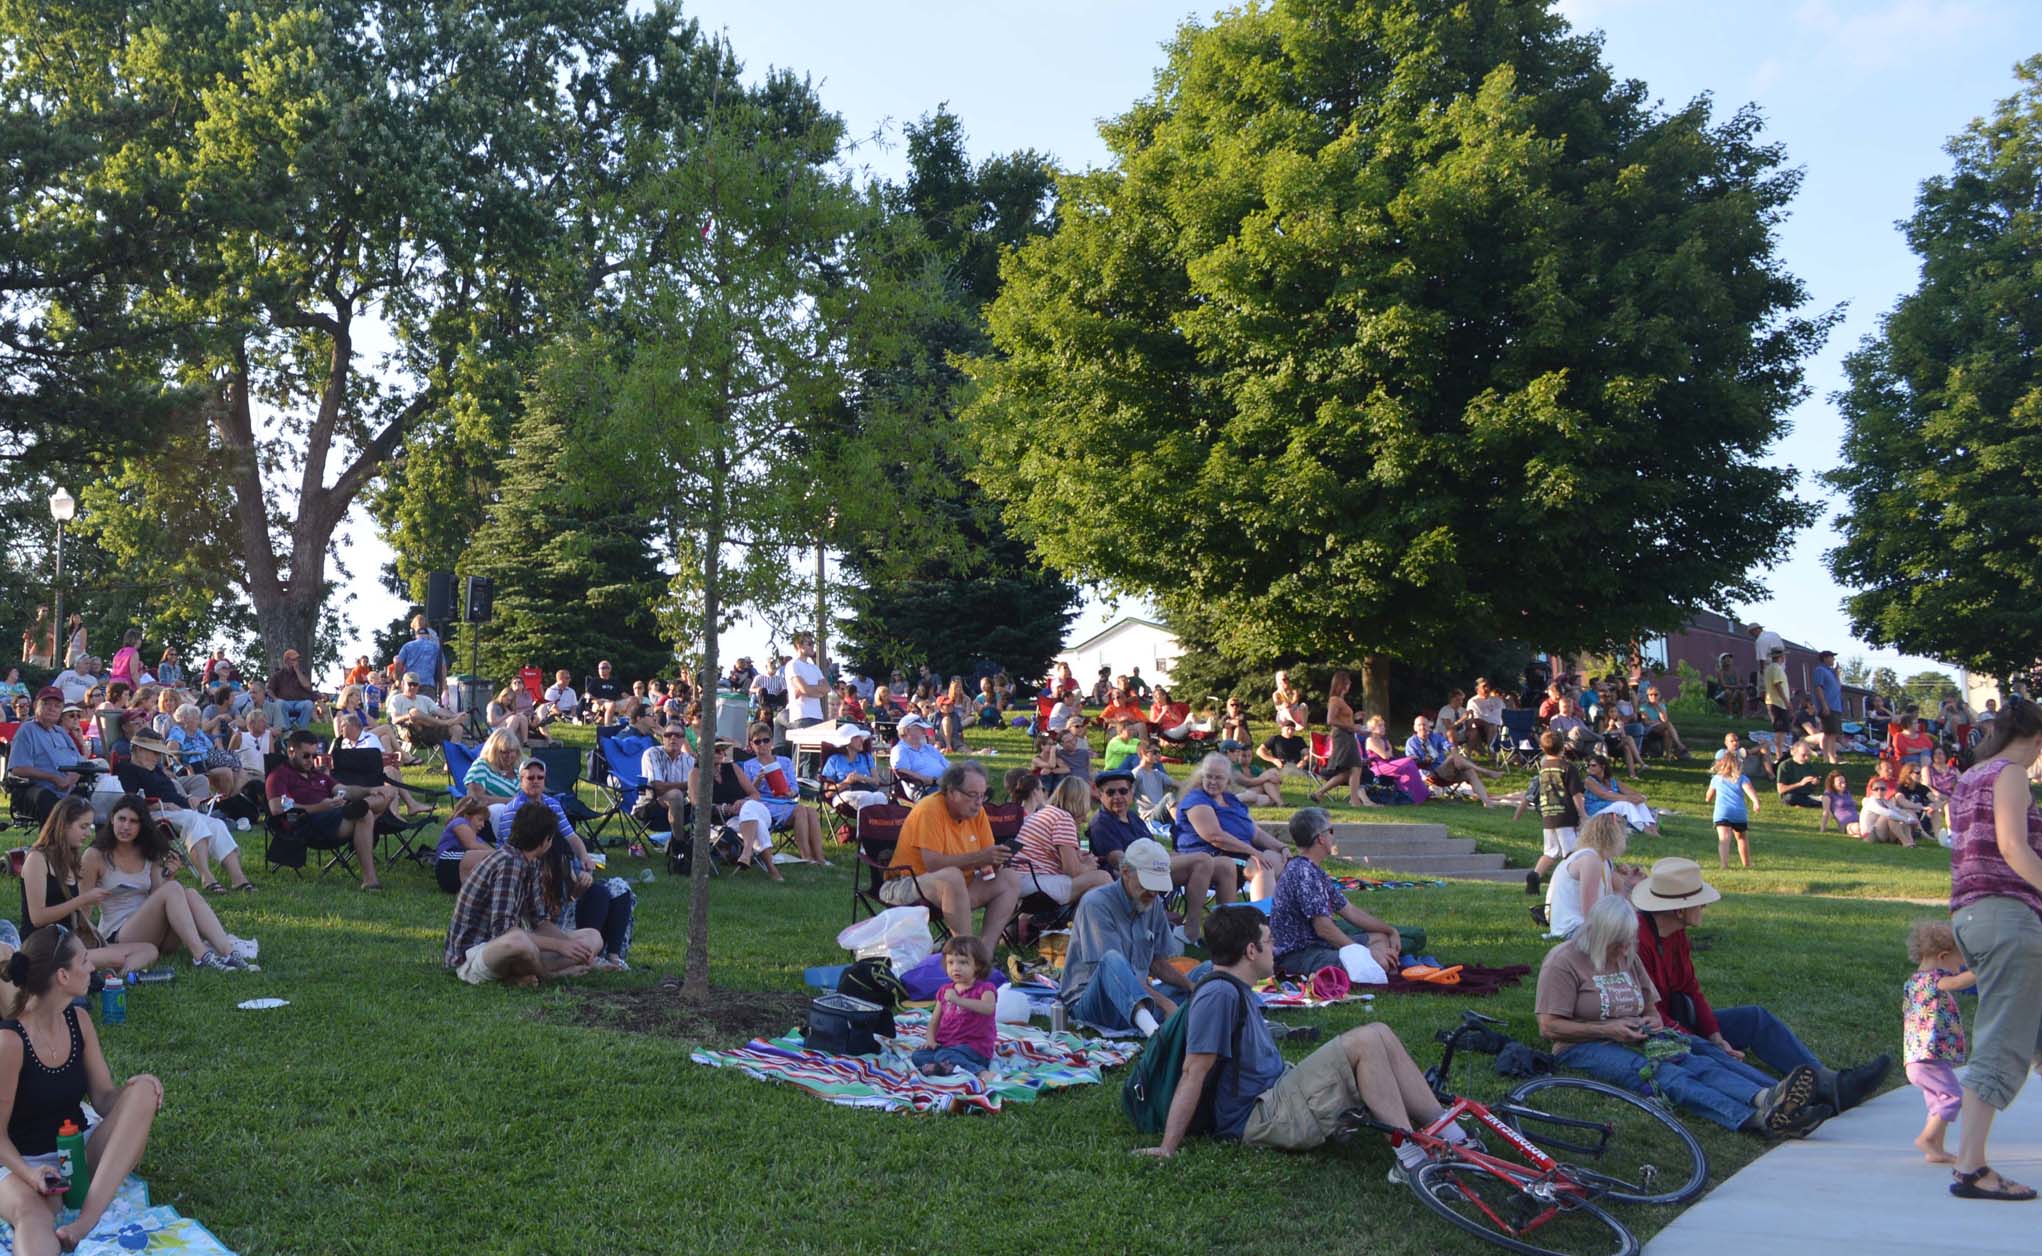 Blacksburg Summer Arts Festival on Henderson lawn